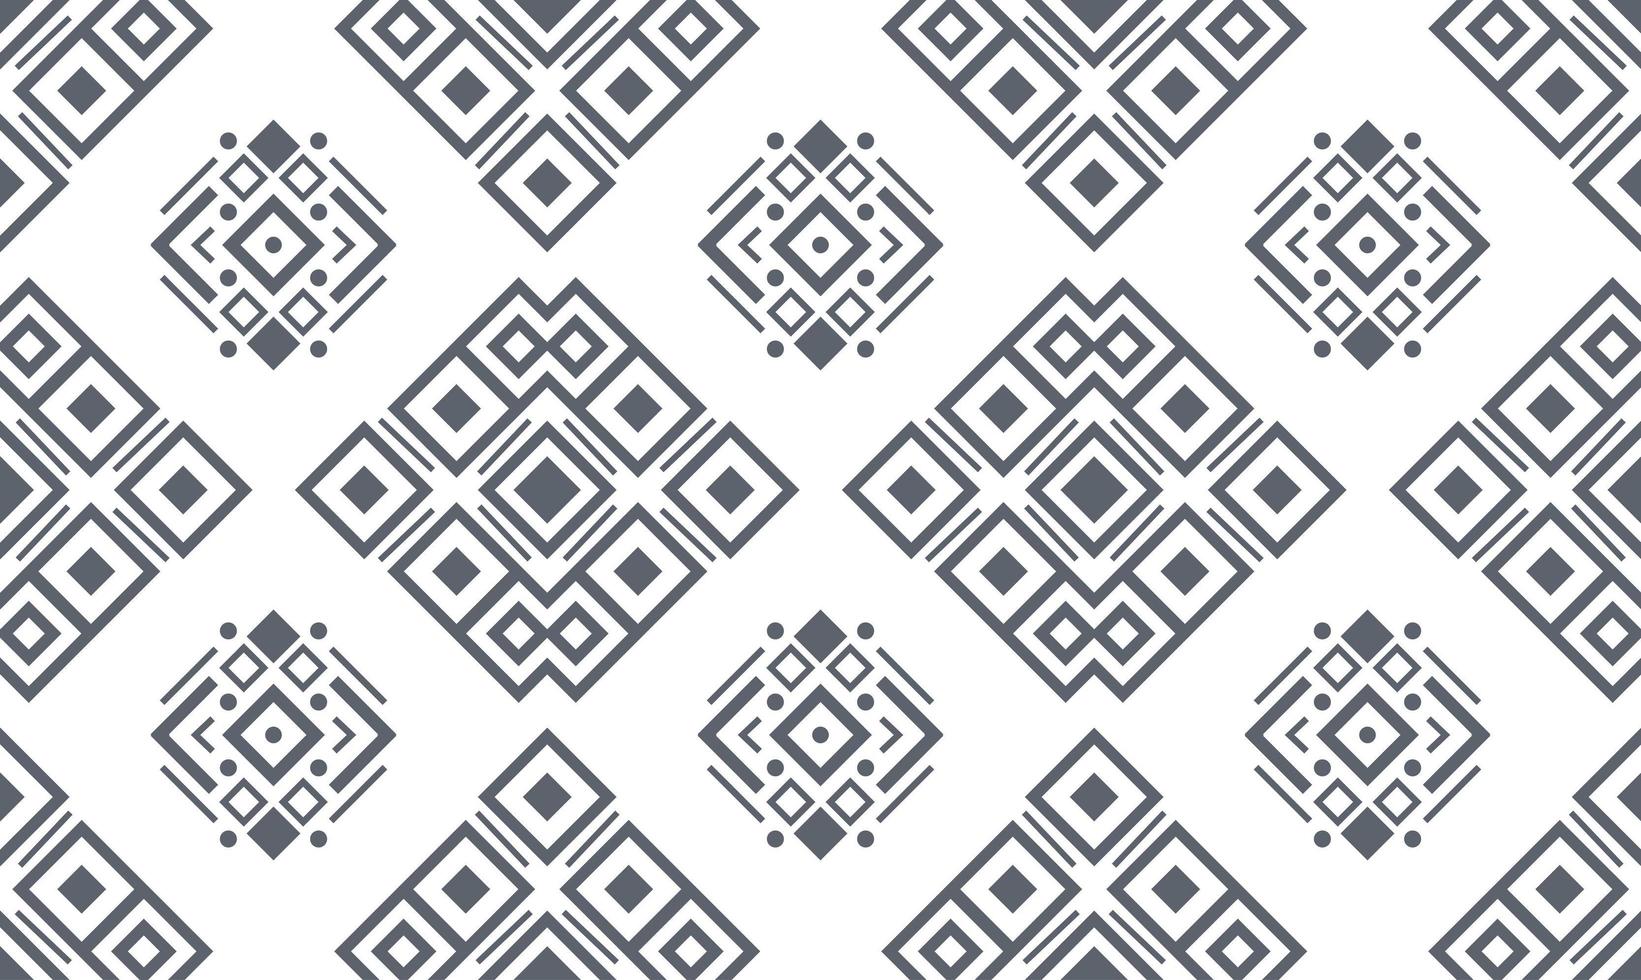 patrones sin fisuras en blanco y negro navajo. vector de fondo